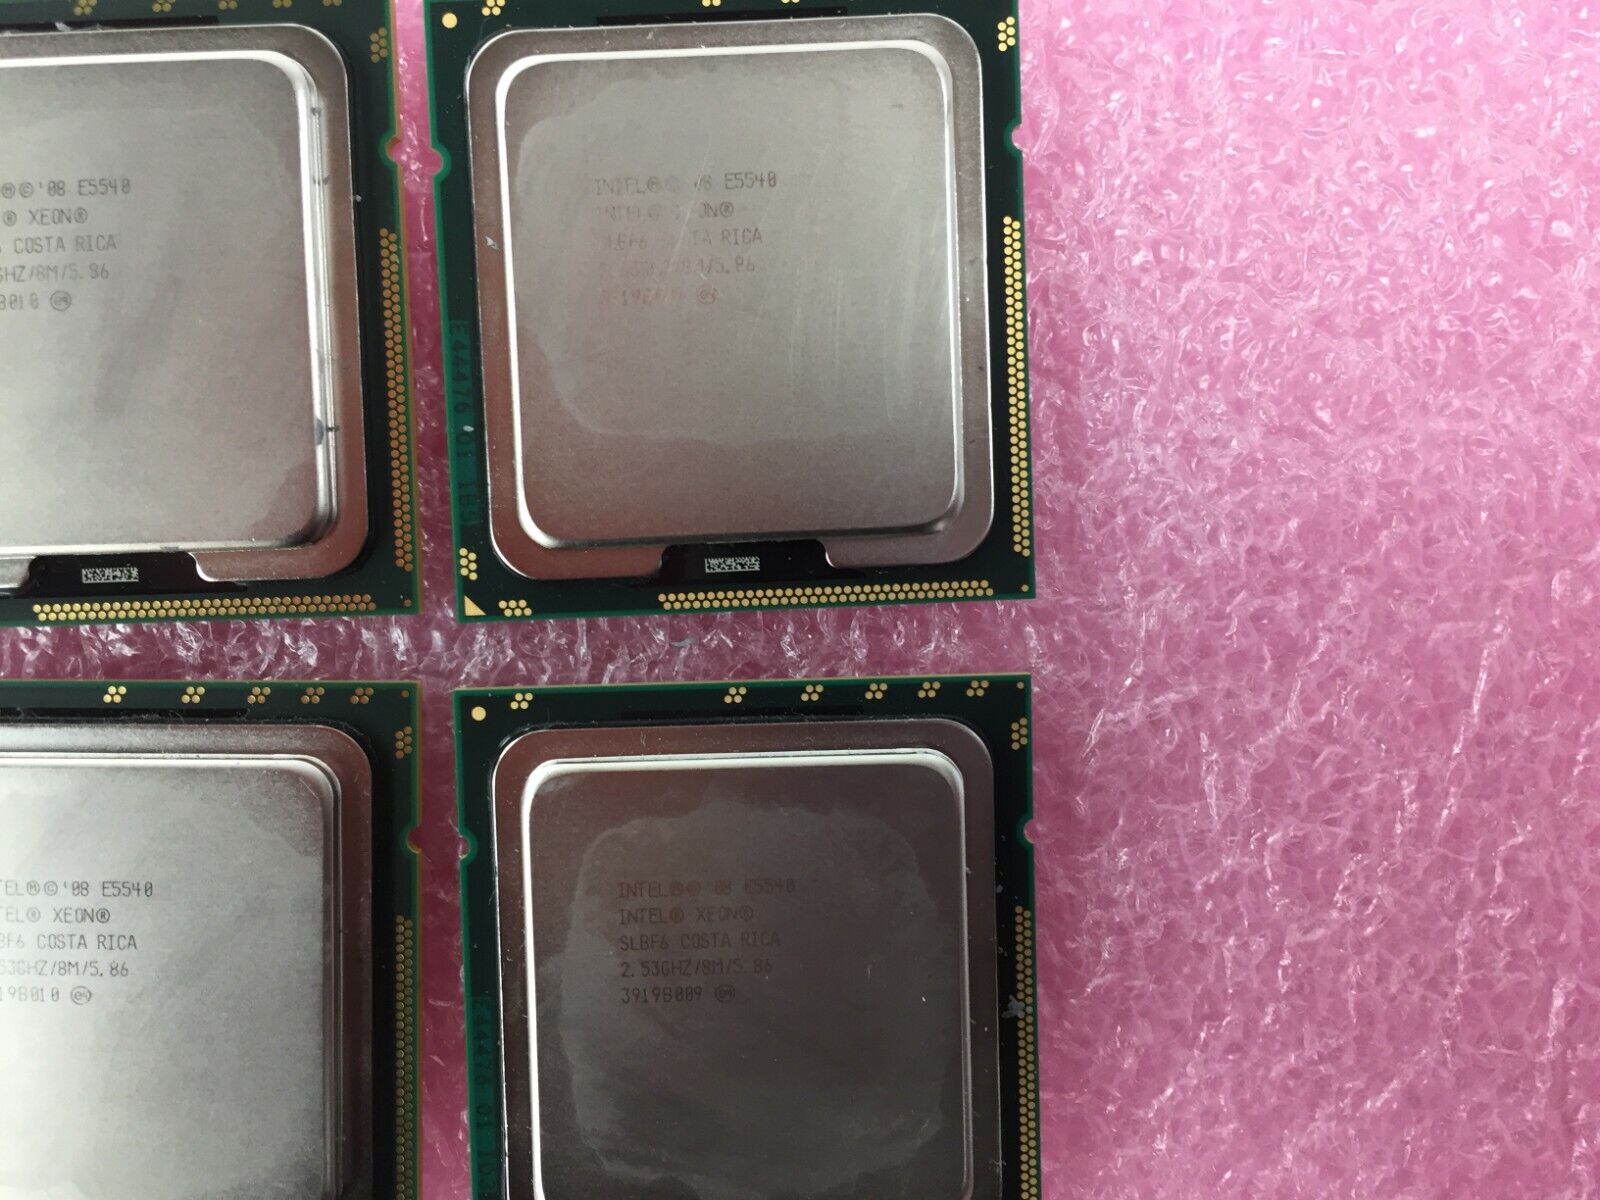 Lot of (6) Intel Xeon E5540 SLBF6 2.53GHz LGA1366 Quad Core Server Processor